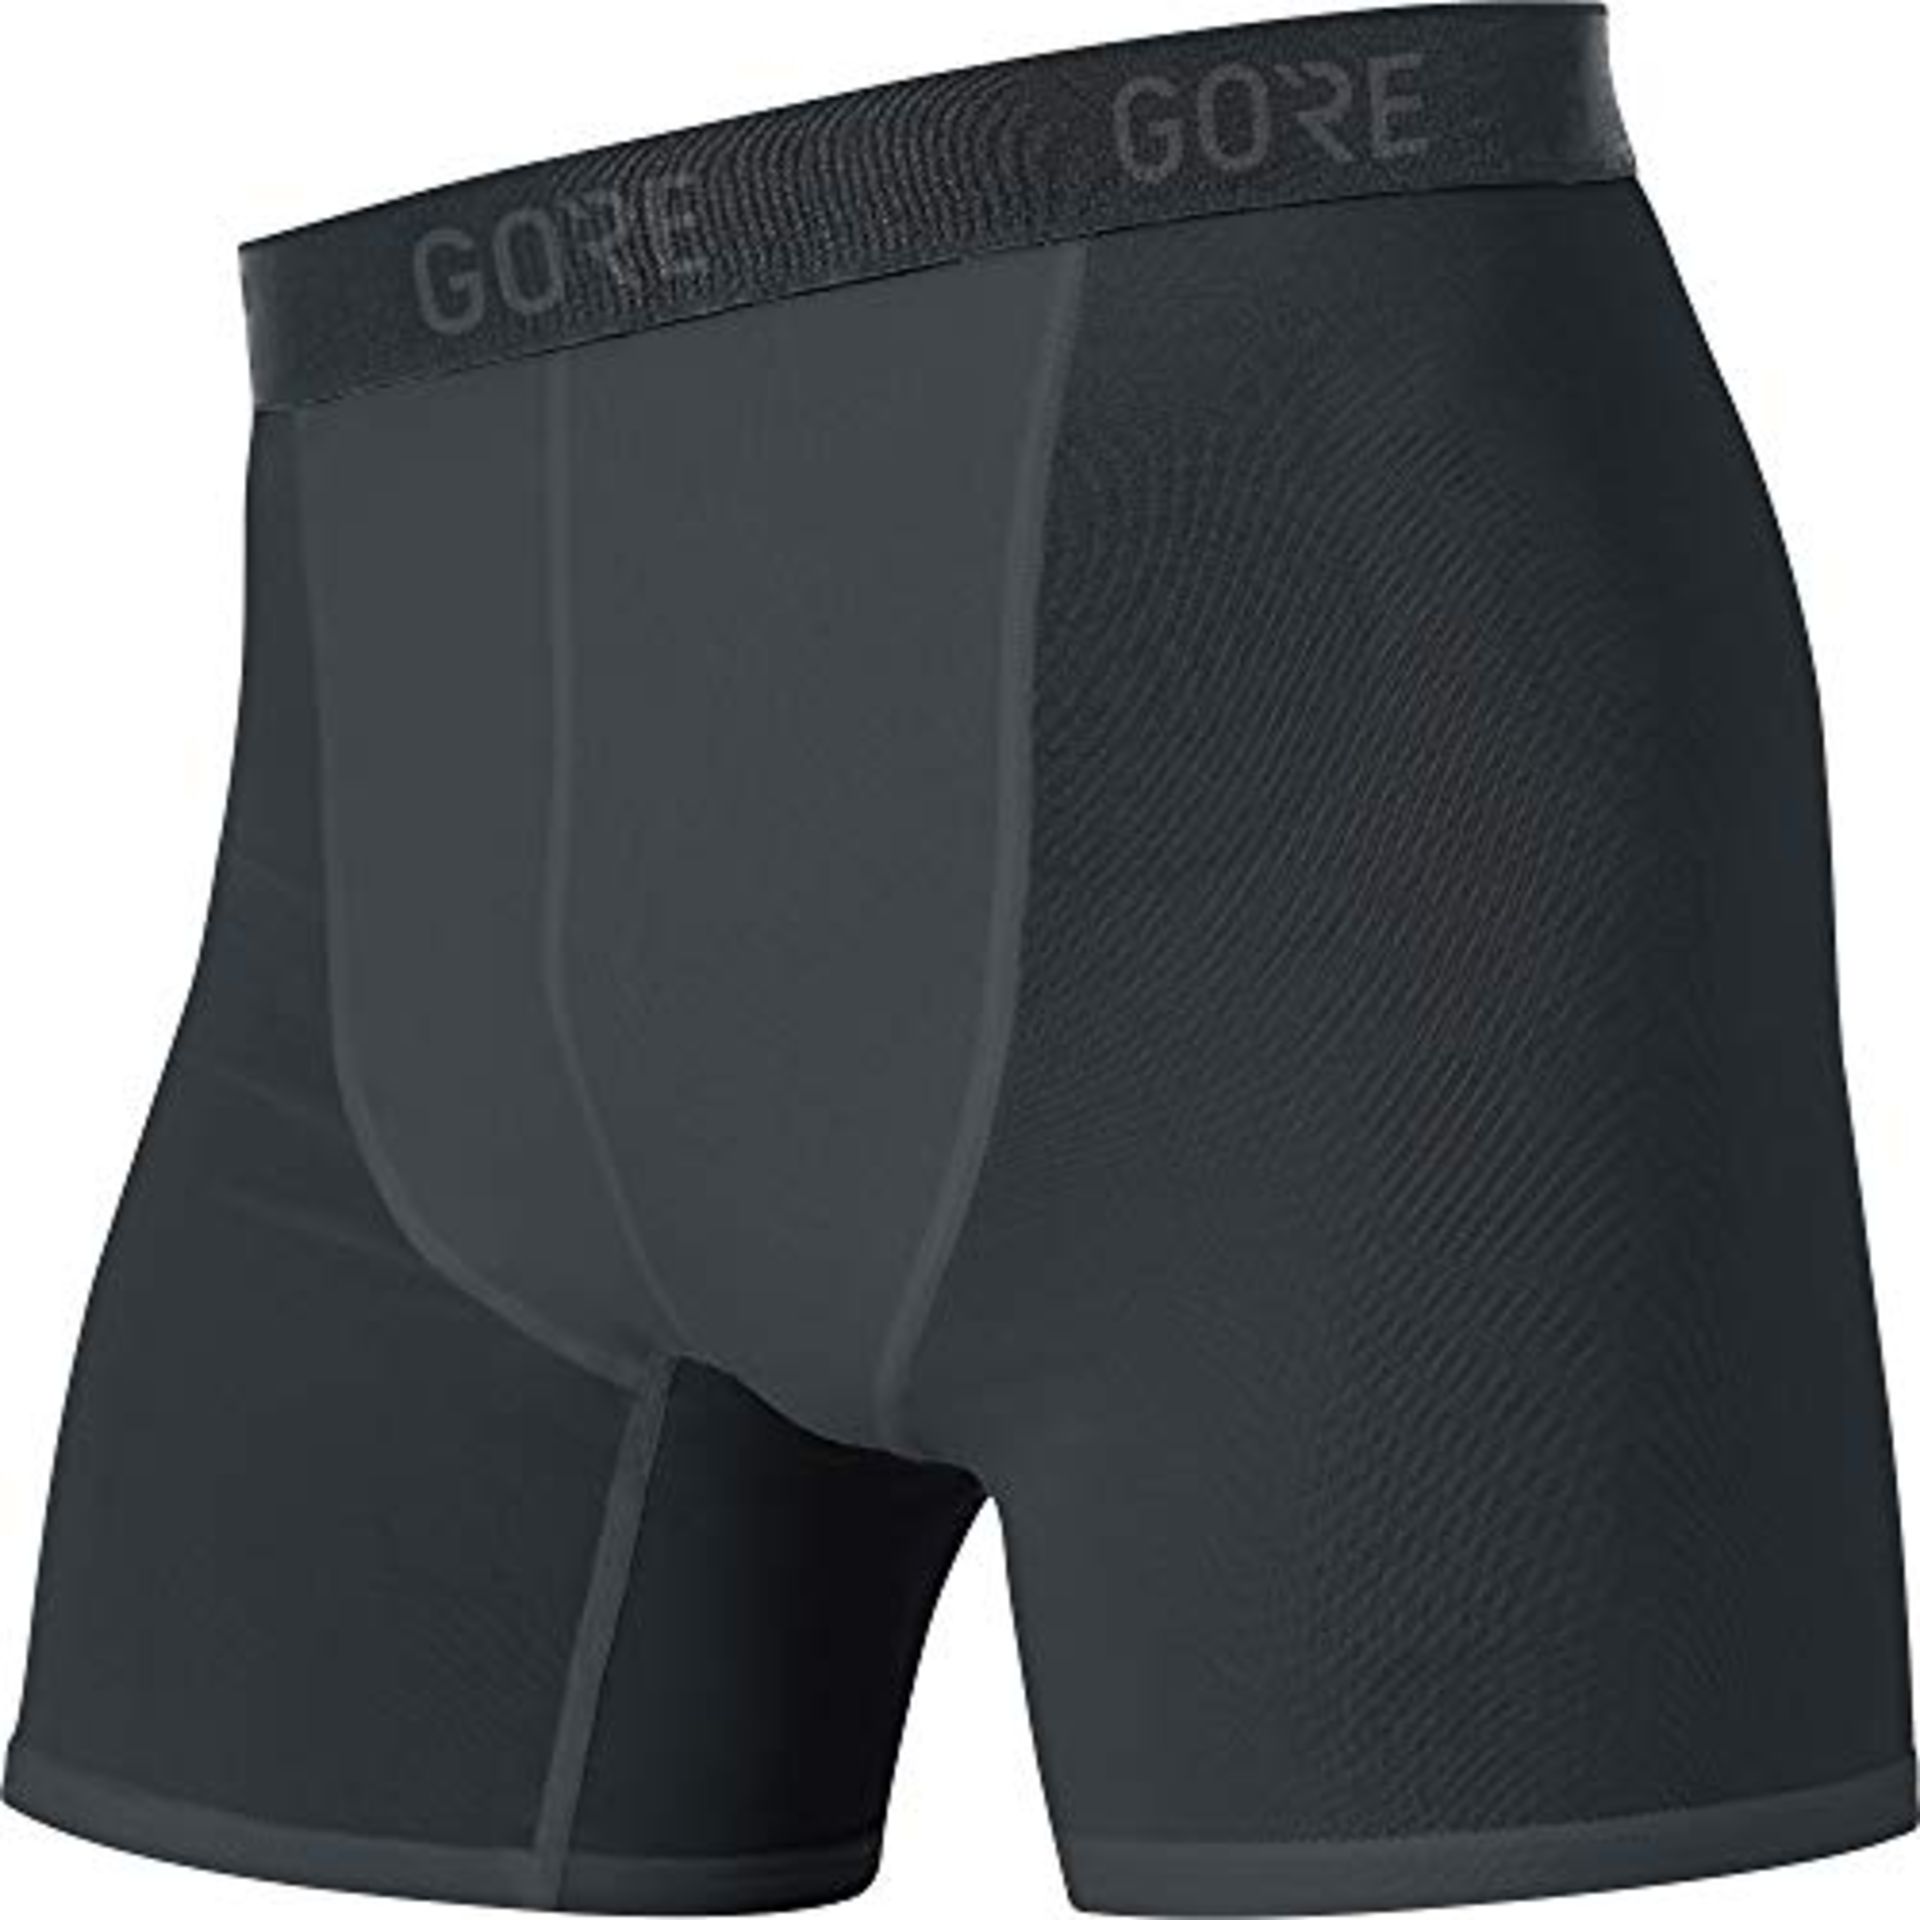 GORE WEAR Herren M Base Layer Boxer Shorts, Black, L EU